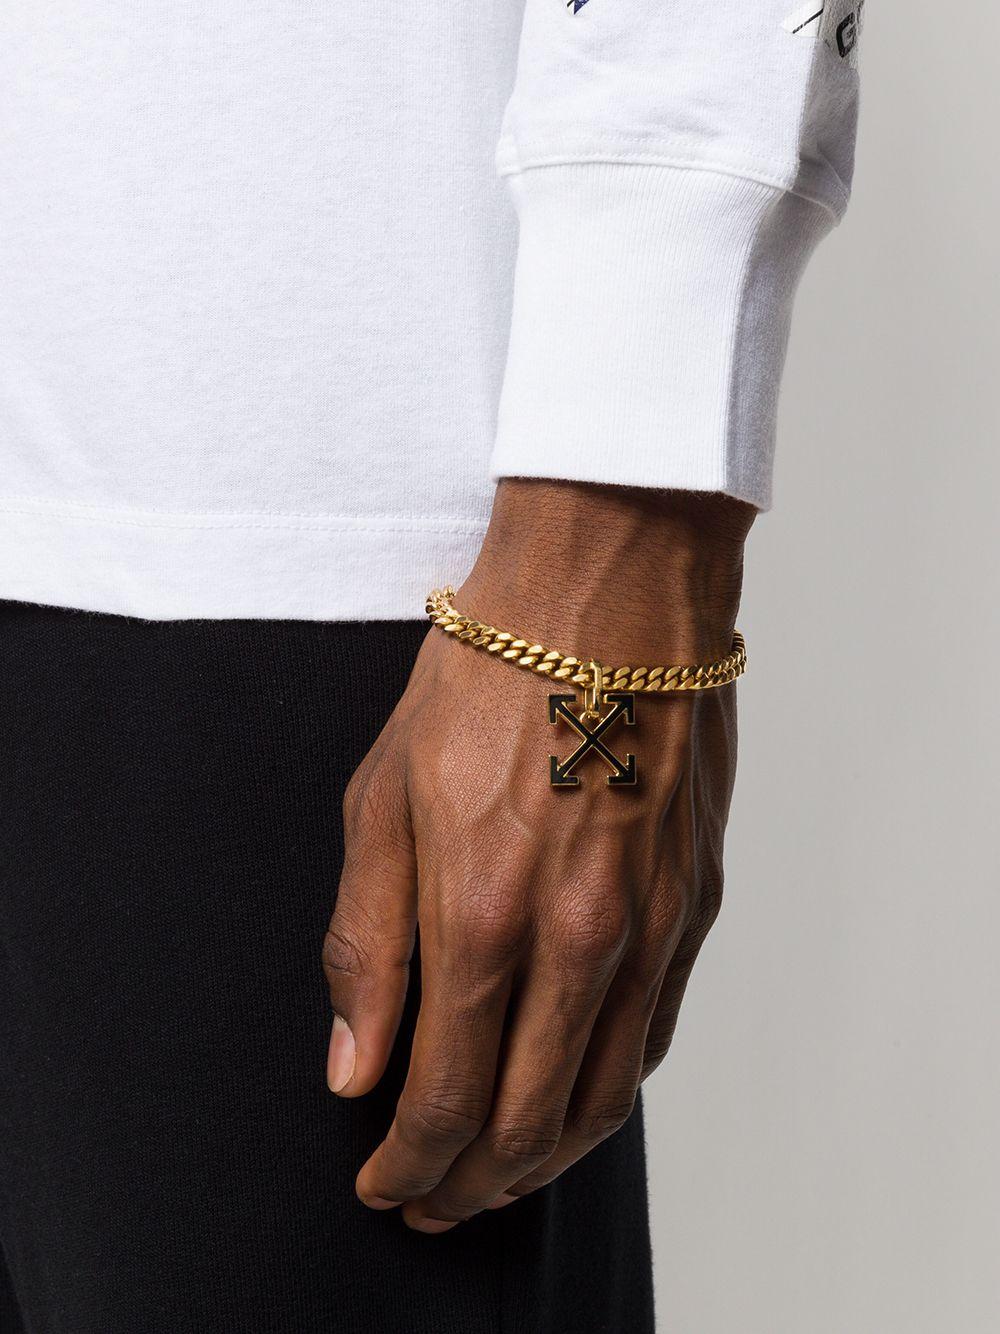 Off-White c/o Virgil Abloh Arrow Charm Chain Bracelet in Gold (Metallic)  for Men | Lyst